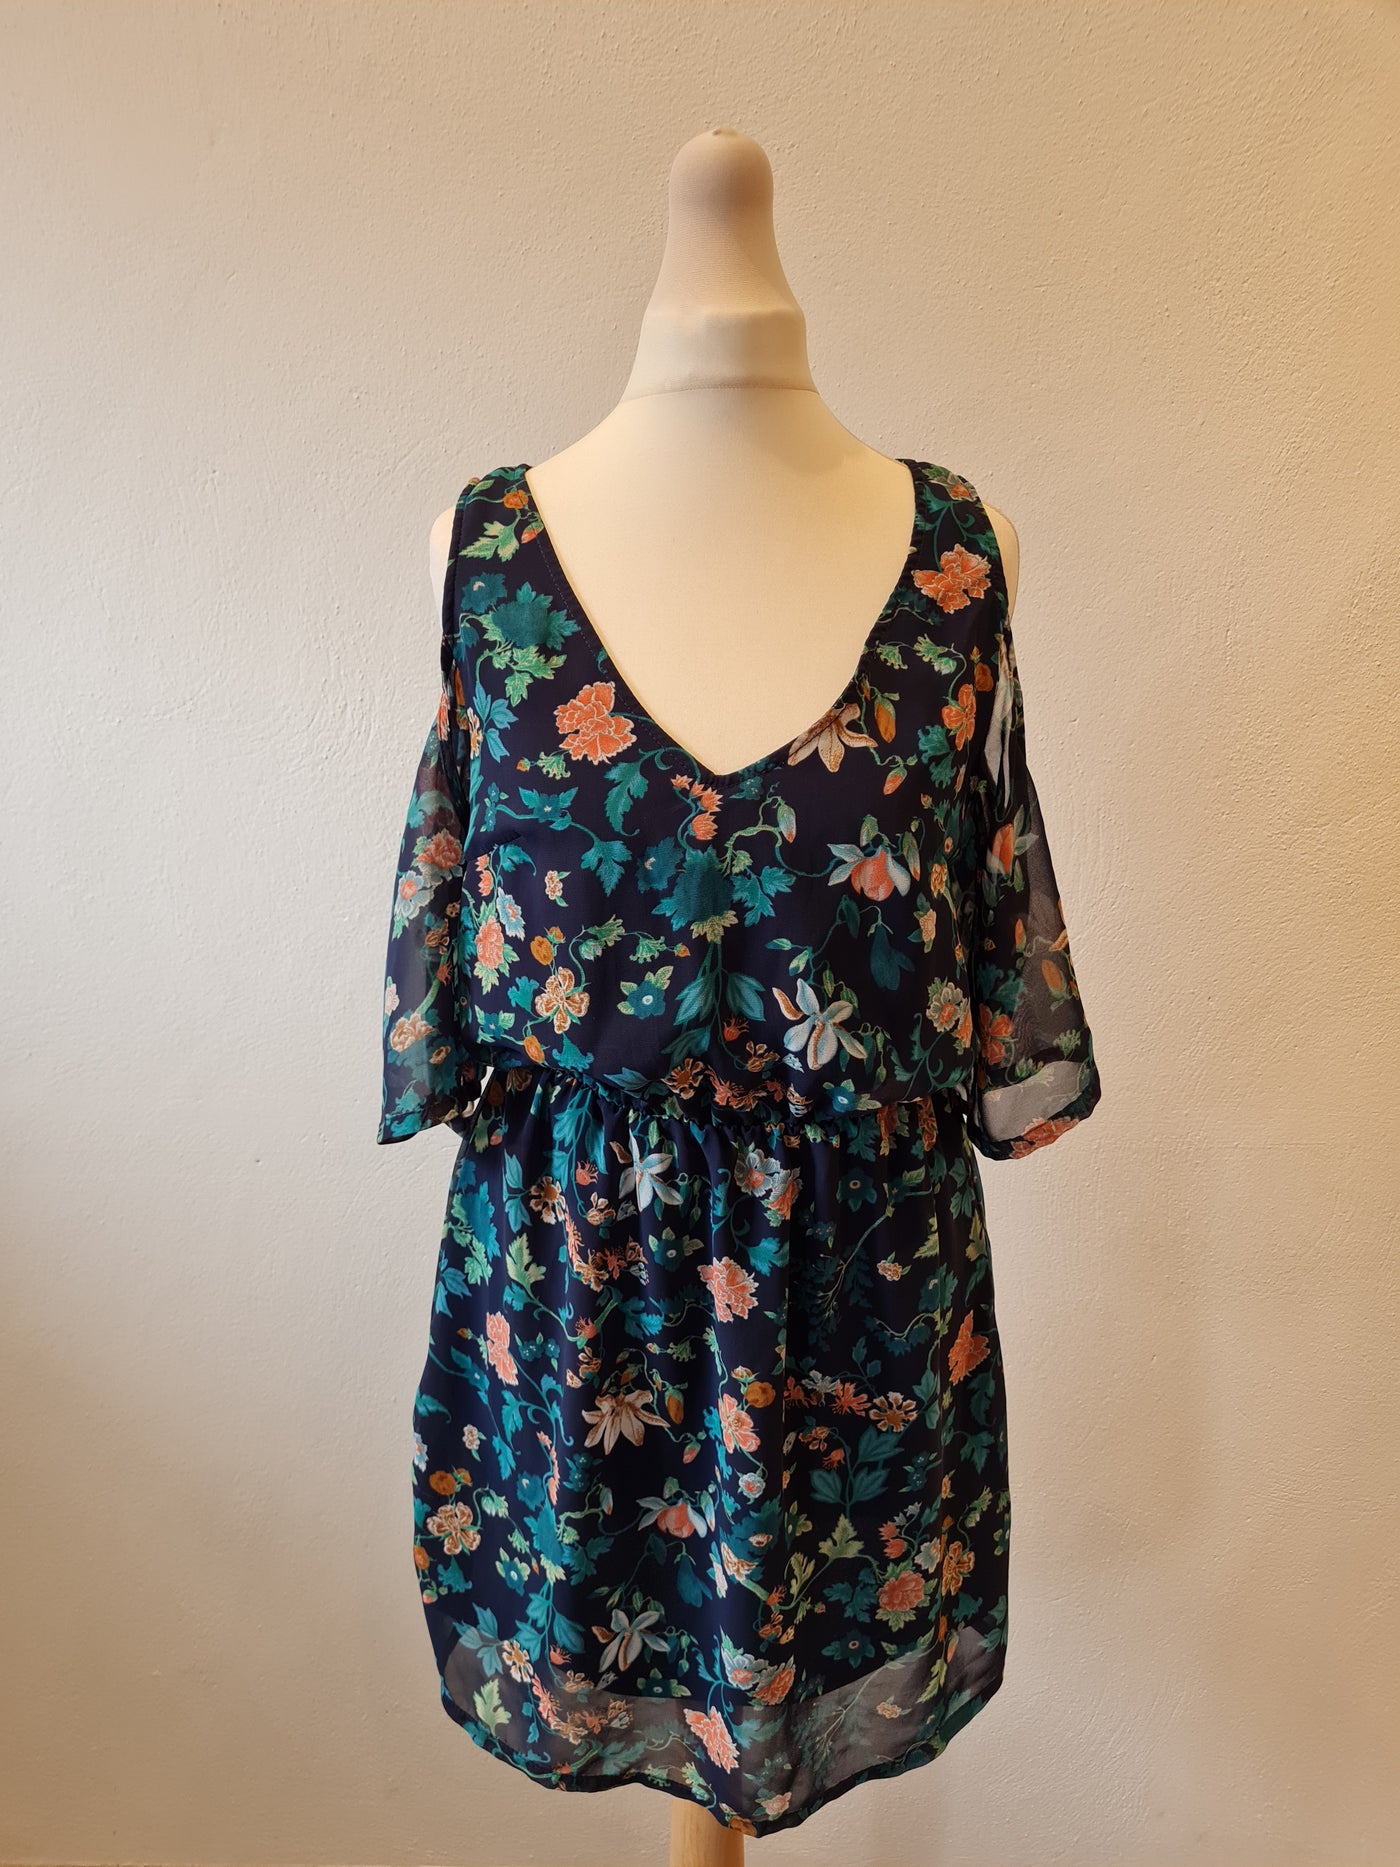 Divided Black/green floral cold shoulder dress Size 8